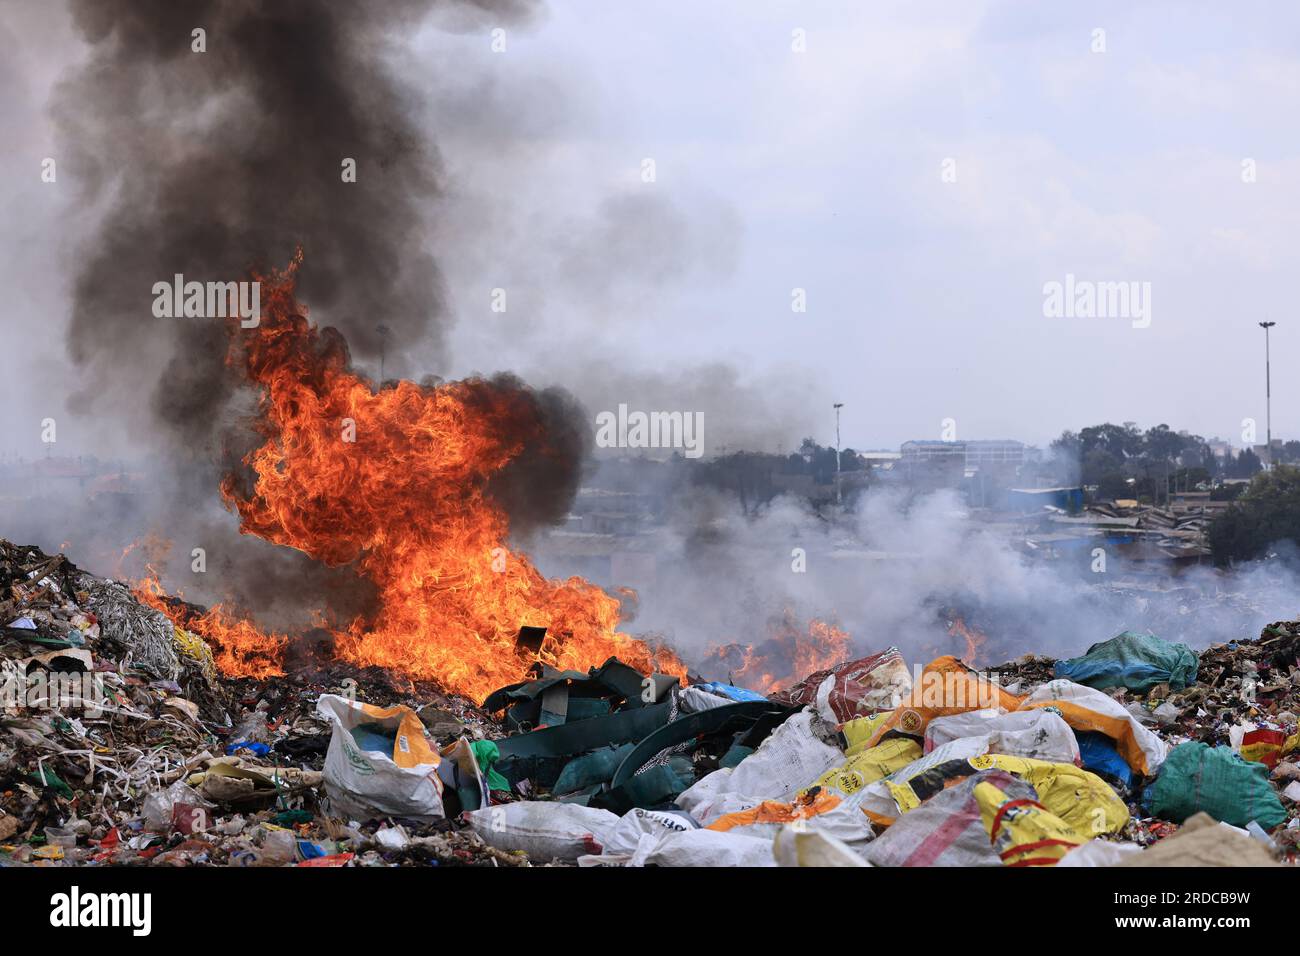 Das Feuer brennt, um Müll auf der Dandora-Mülldeponie zu verbrennen. Die Regierung des Stadtbezirks Nairobi plant die Errichtung einer Recyclinganlage, die die auf der Deponie Dandora abgelagerten Abfälle in Energie umwandeln wird. Die weitläufige Mülldeponie nimmt täglich etwa 2.000 Tonnen Abfall auf, was sie zur geschäftigsten Arbeitsstätte für Abfallsammler macht, um Kunststoffe und andere recycelbare Materialien zu finden. Stockfoto